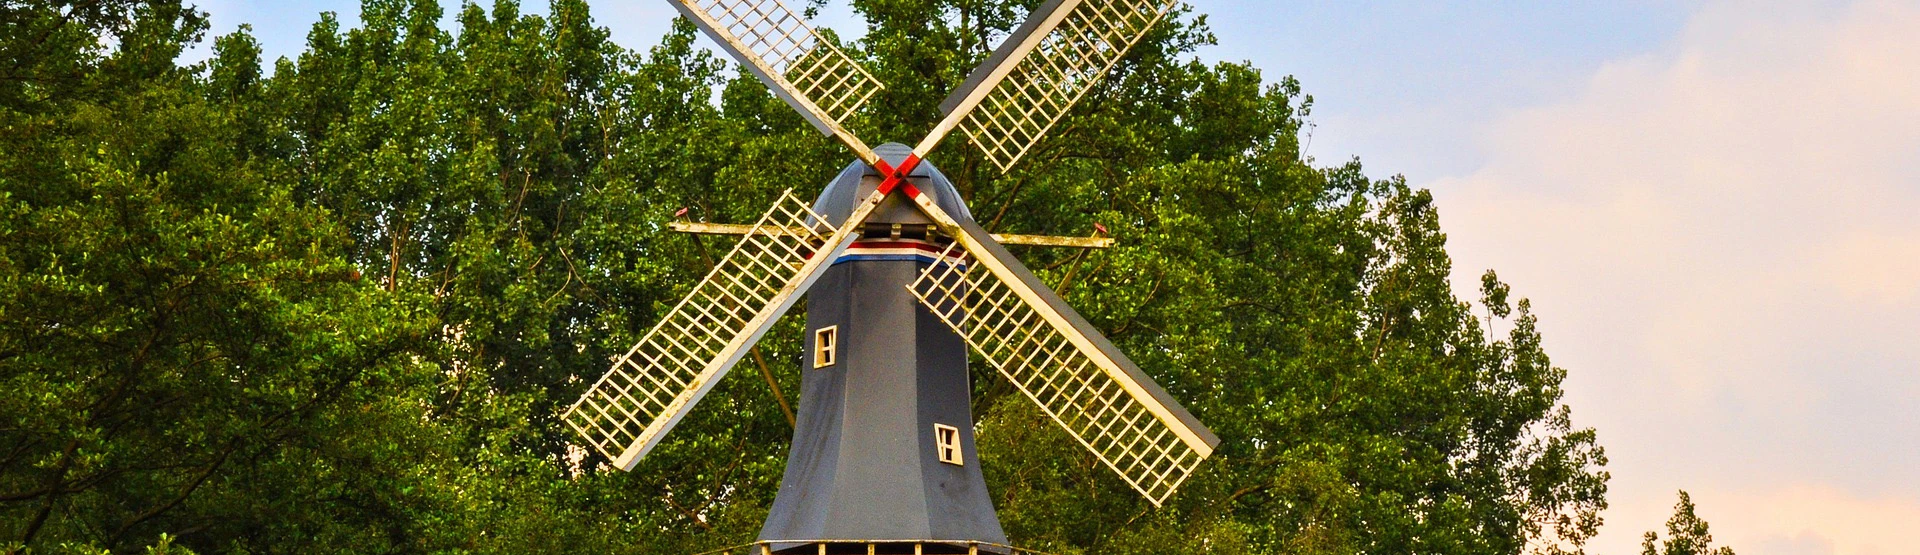 Dutch Windmill G0f9dbfeda 1920